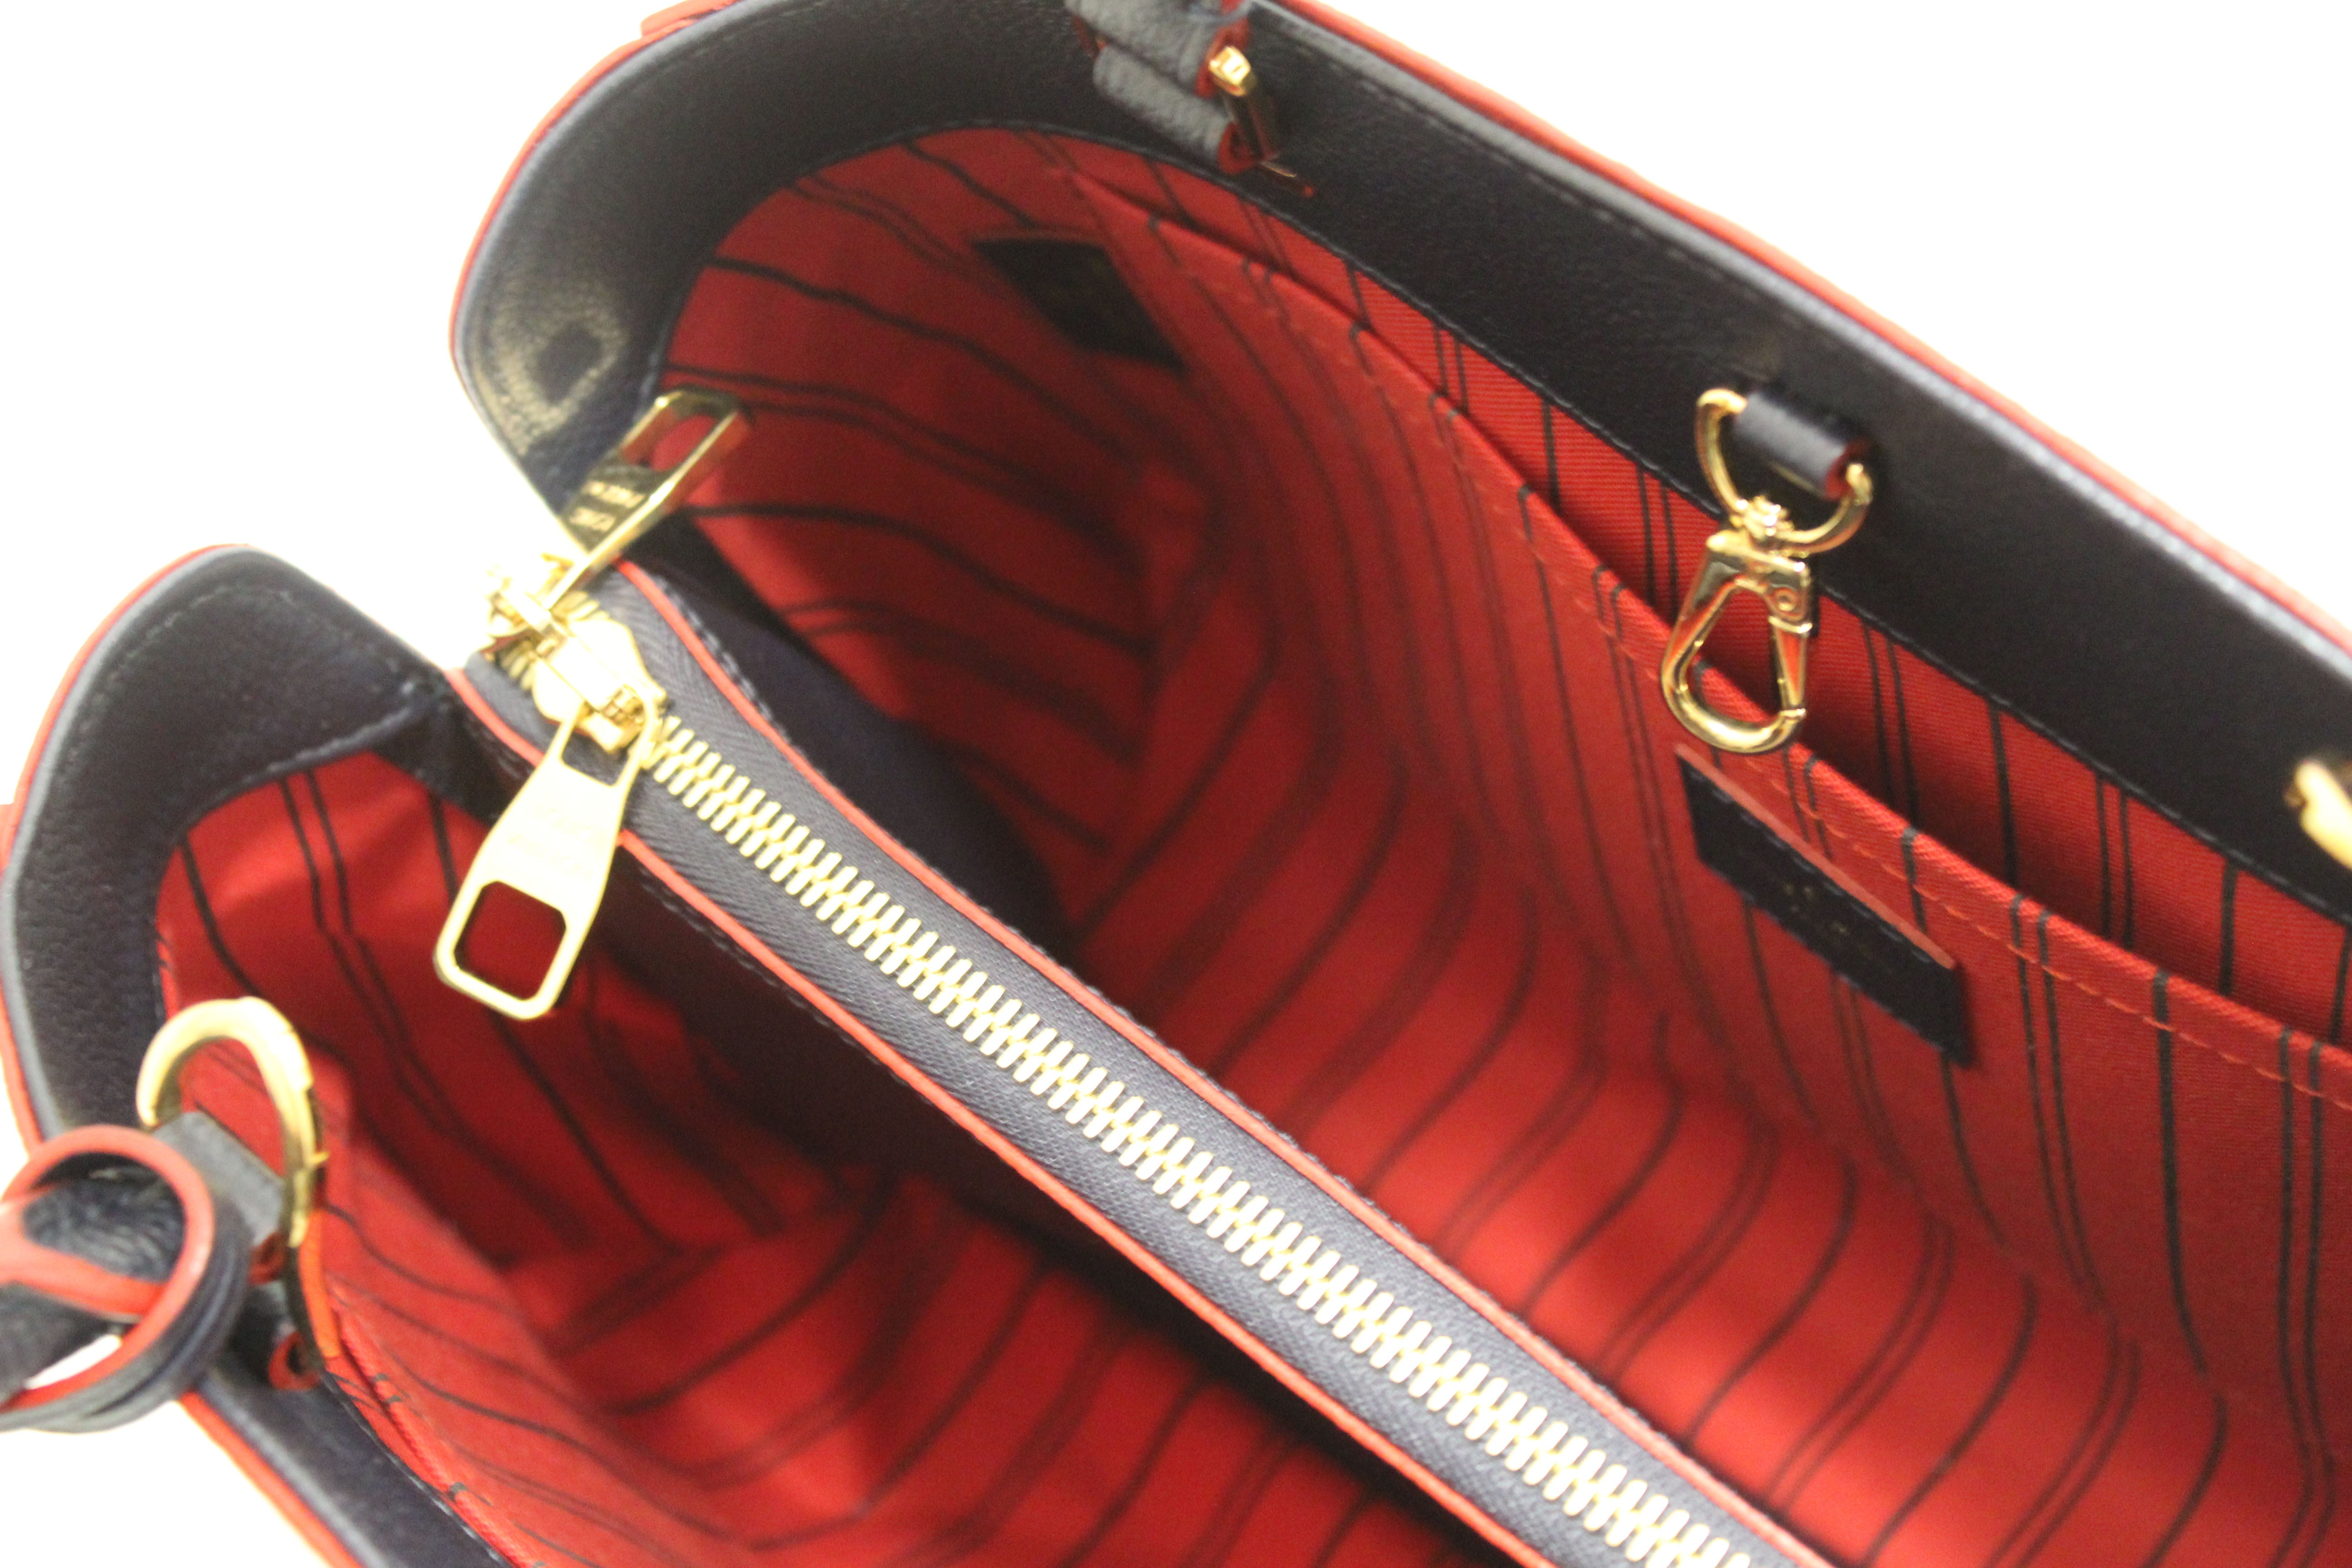 Red Louis Vuitton Monogram Empreinte Montaigne MM Satchel